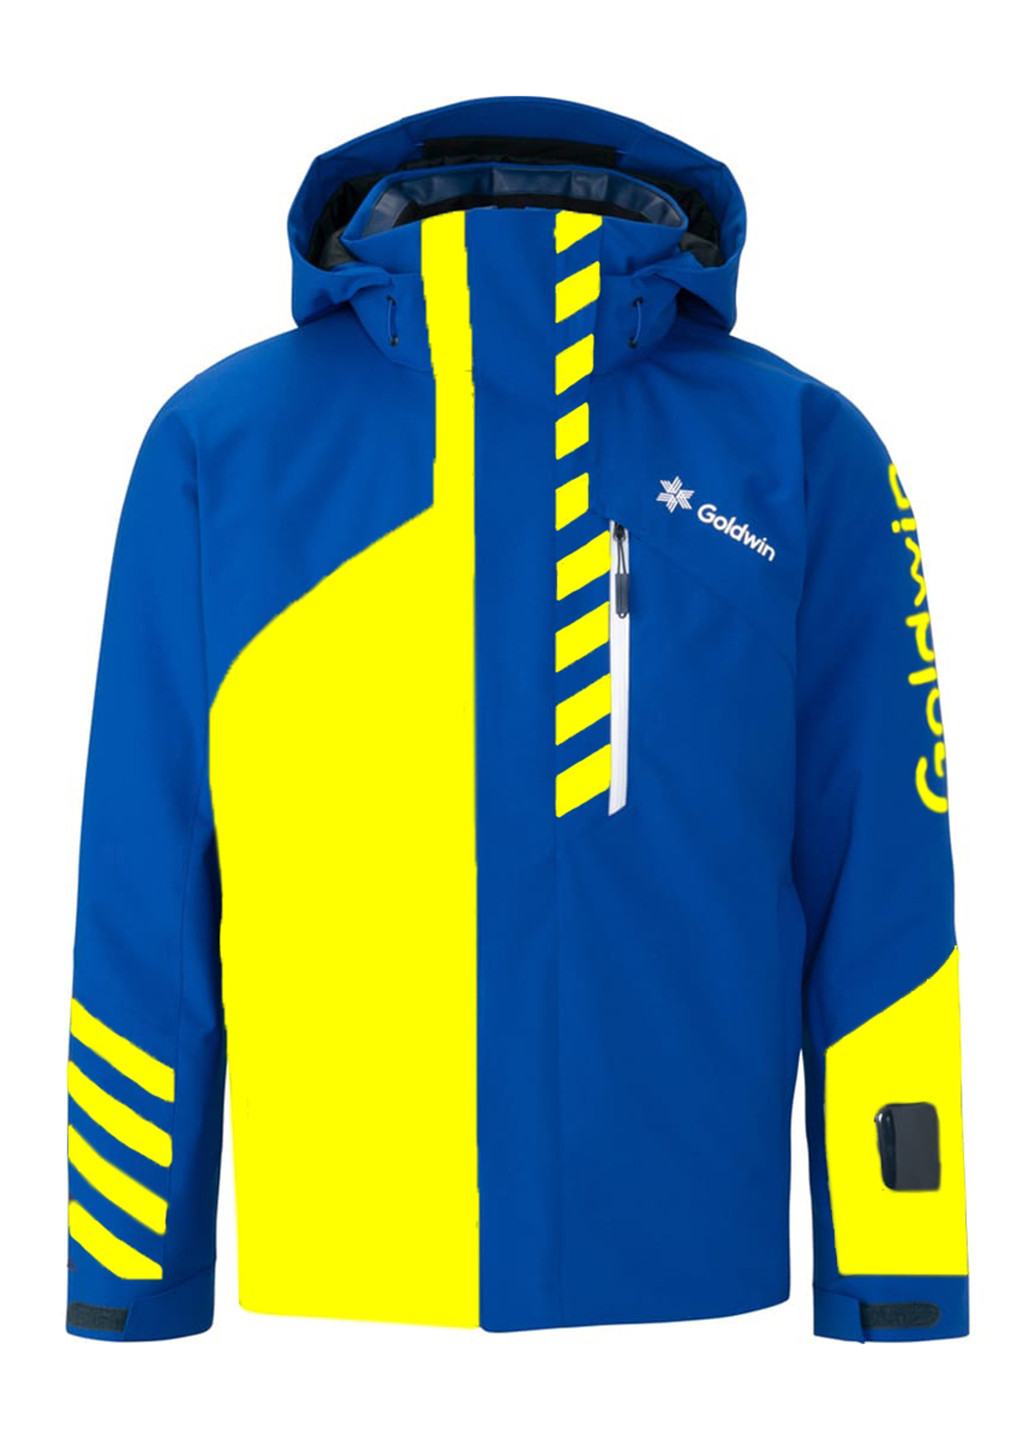 Сине-желтая зимняя куртка лыжная Goldwin